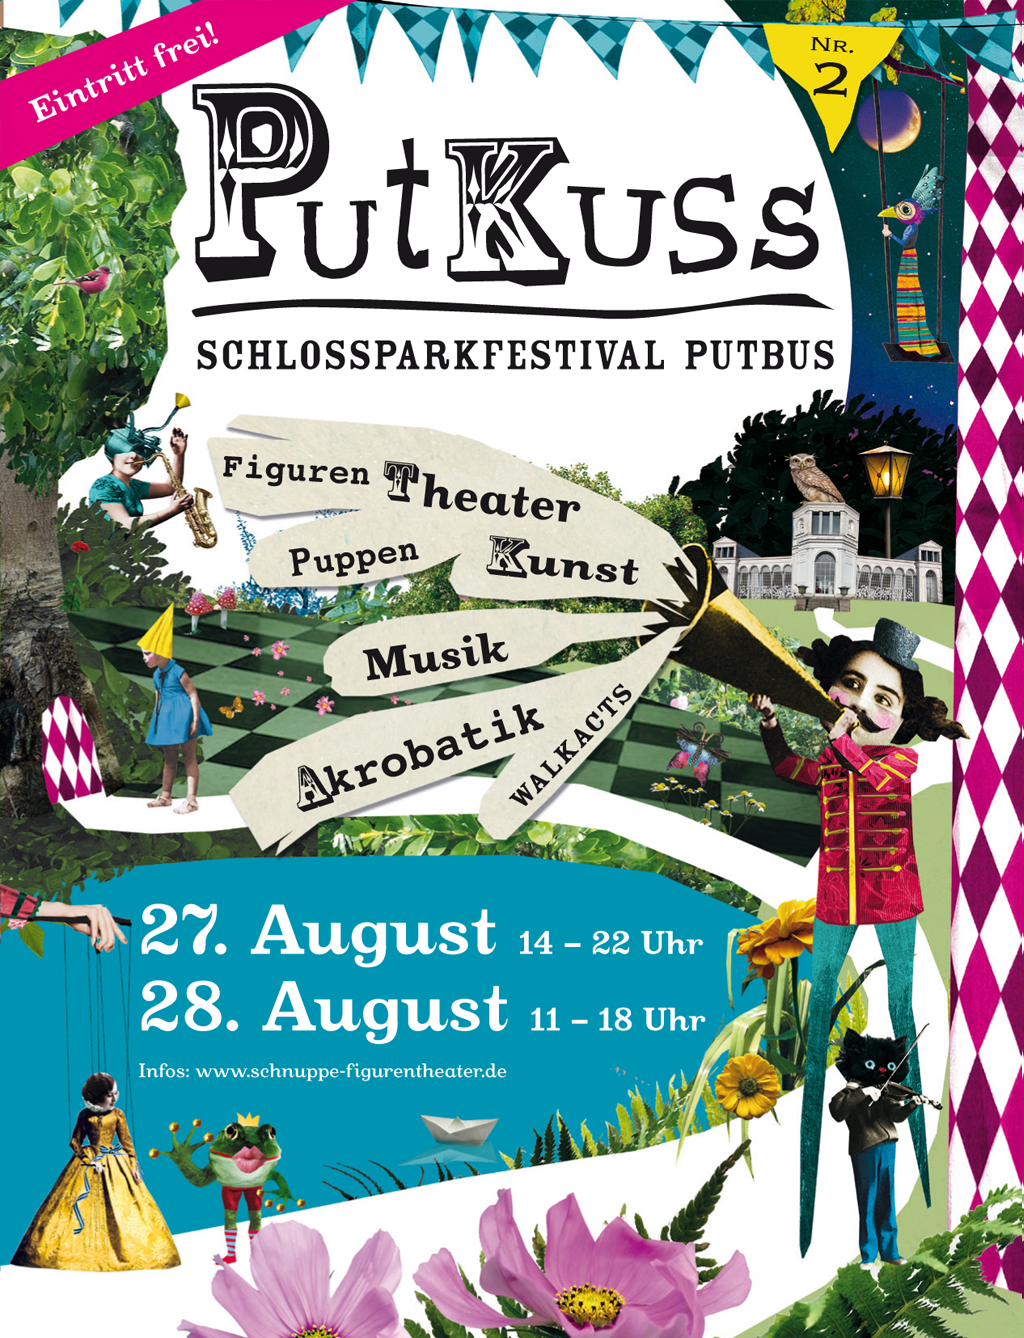 PutKuss Schlossparkfestival in Putbus 27. August 14 – 22 Uhr und 28. August 11 – 18 Uhr